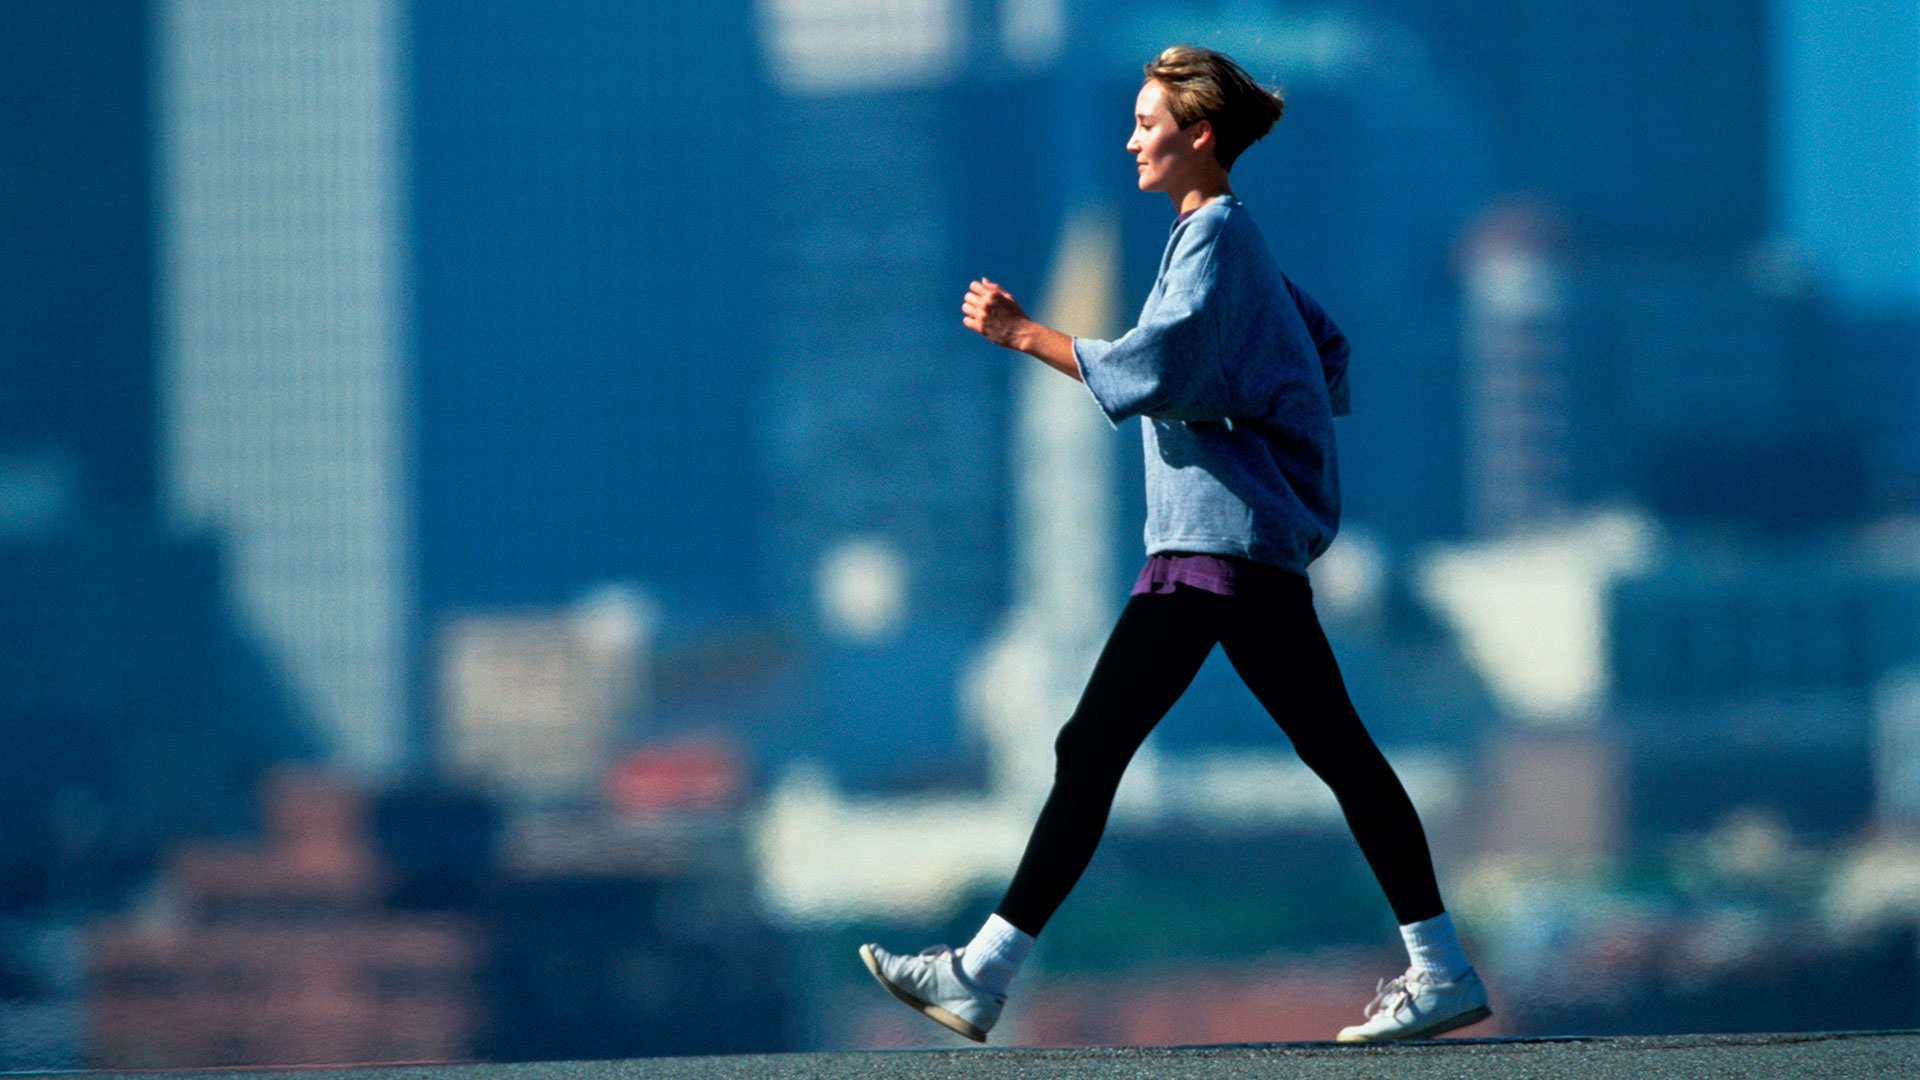 Un estudio de la Universidad de Sydney encontró que las personas que pueden caminar a un ritmo rápido 3 o 4 millas, es decir entre unos 4,8 y 6,4 kilómetros tienen un riesgo 24% menor de mortalidad por todas las causas en comparación con aquellas que caminan a un ritmo lento   (Getty Images)